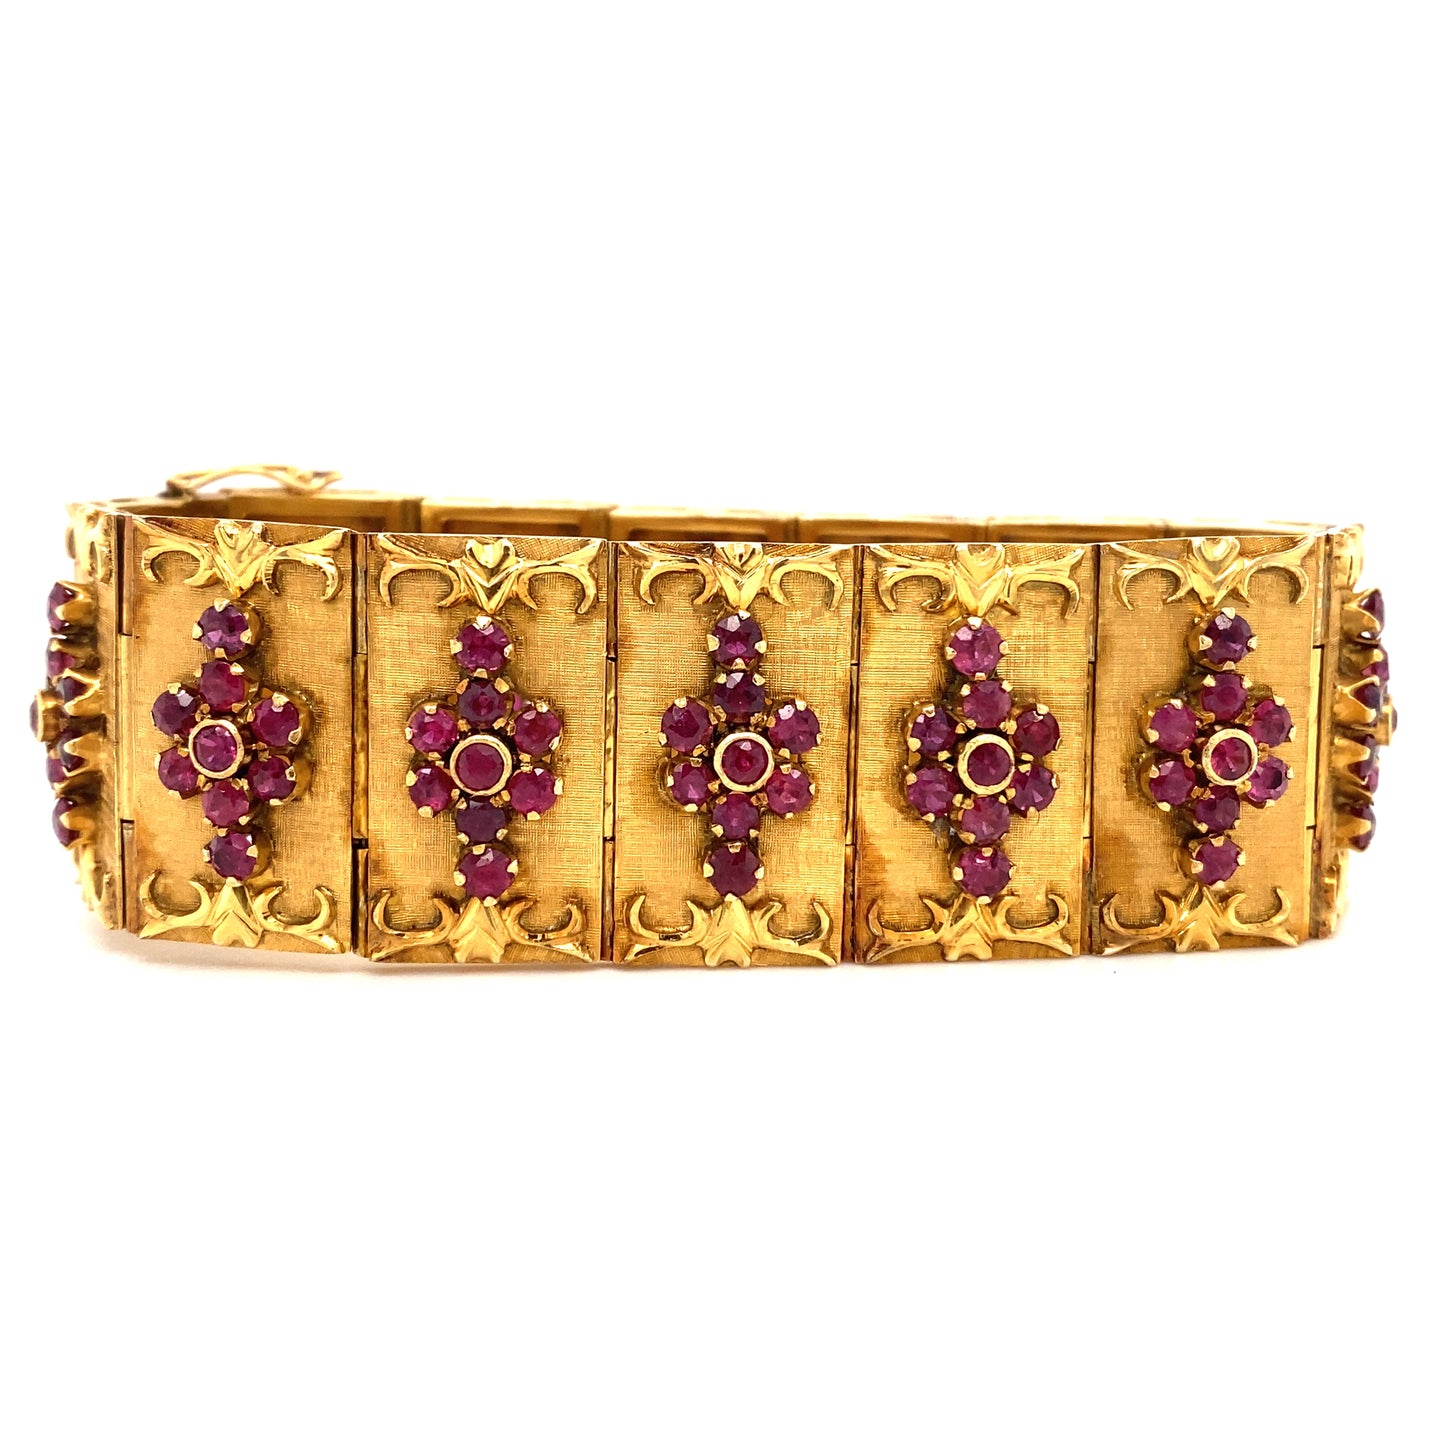 Circa 1960s Ruby Panel Bracelet in 14K Gold